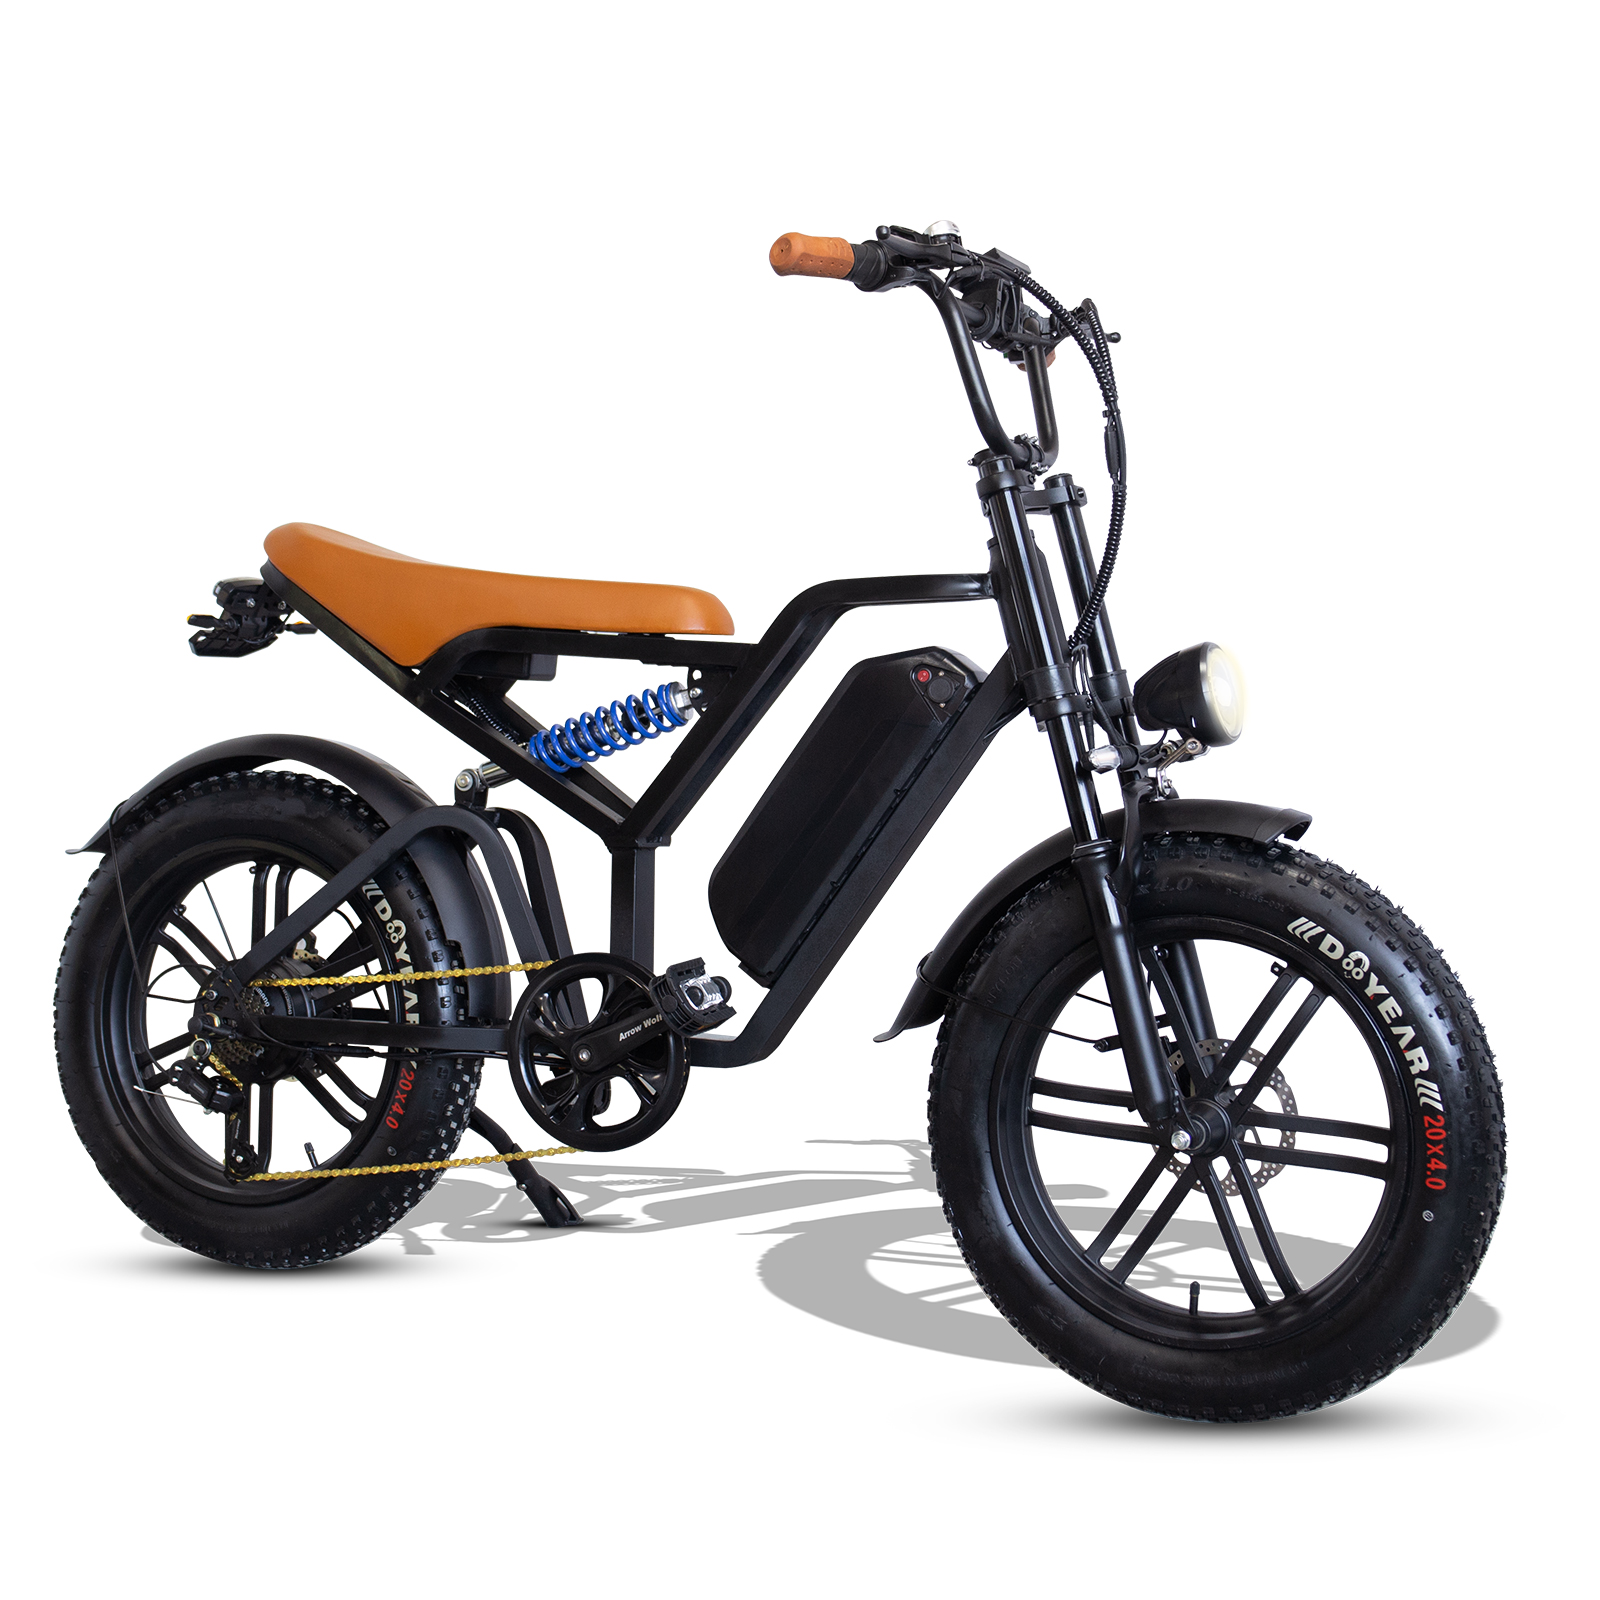 20' bicicletas de 48V 1000W precios de la bicicleta Ebike bicicleta híbrida eléctrica barata Bicicleta Electrica